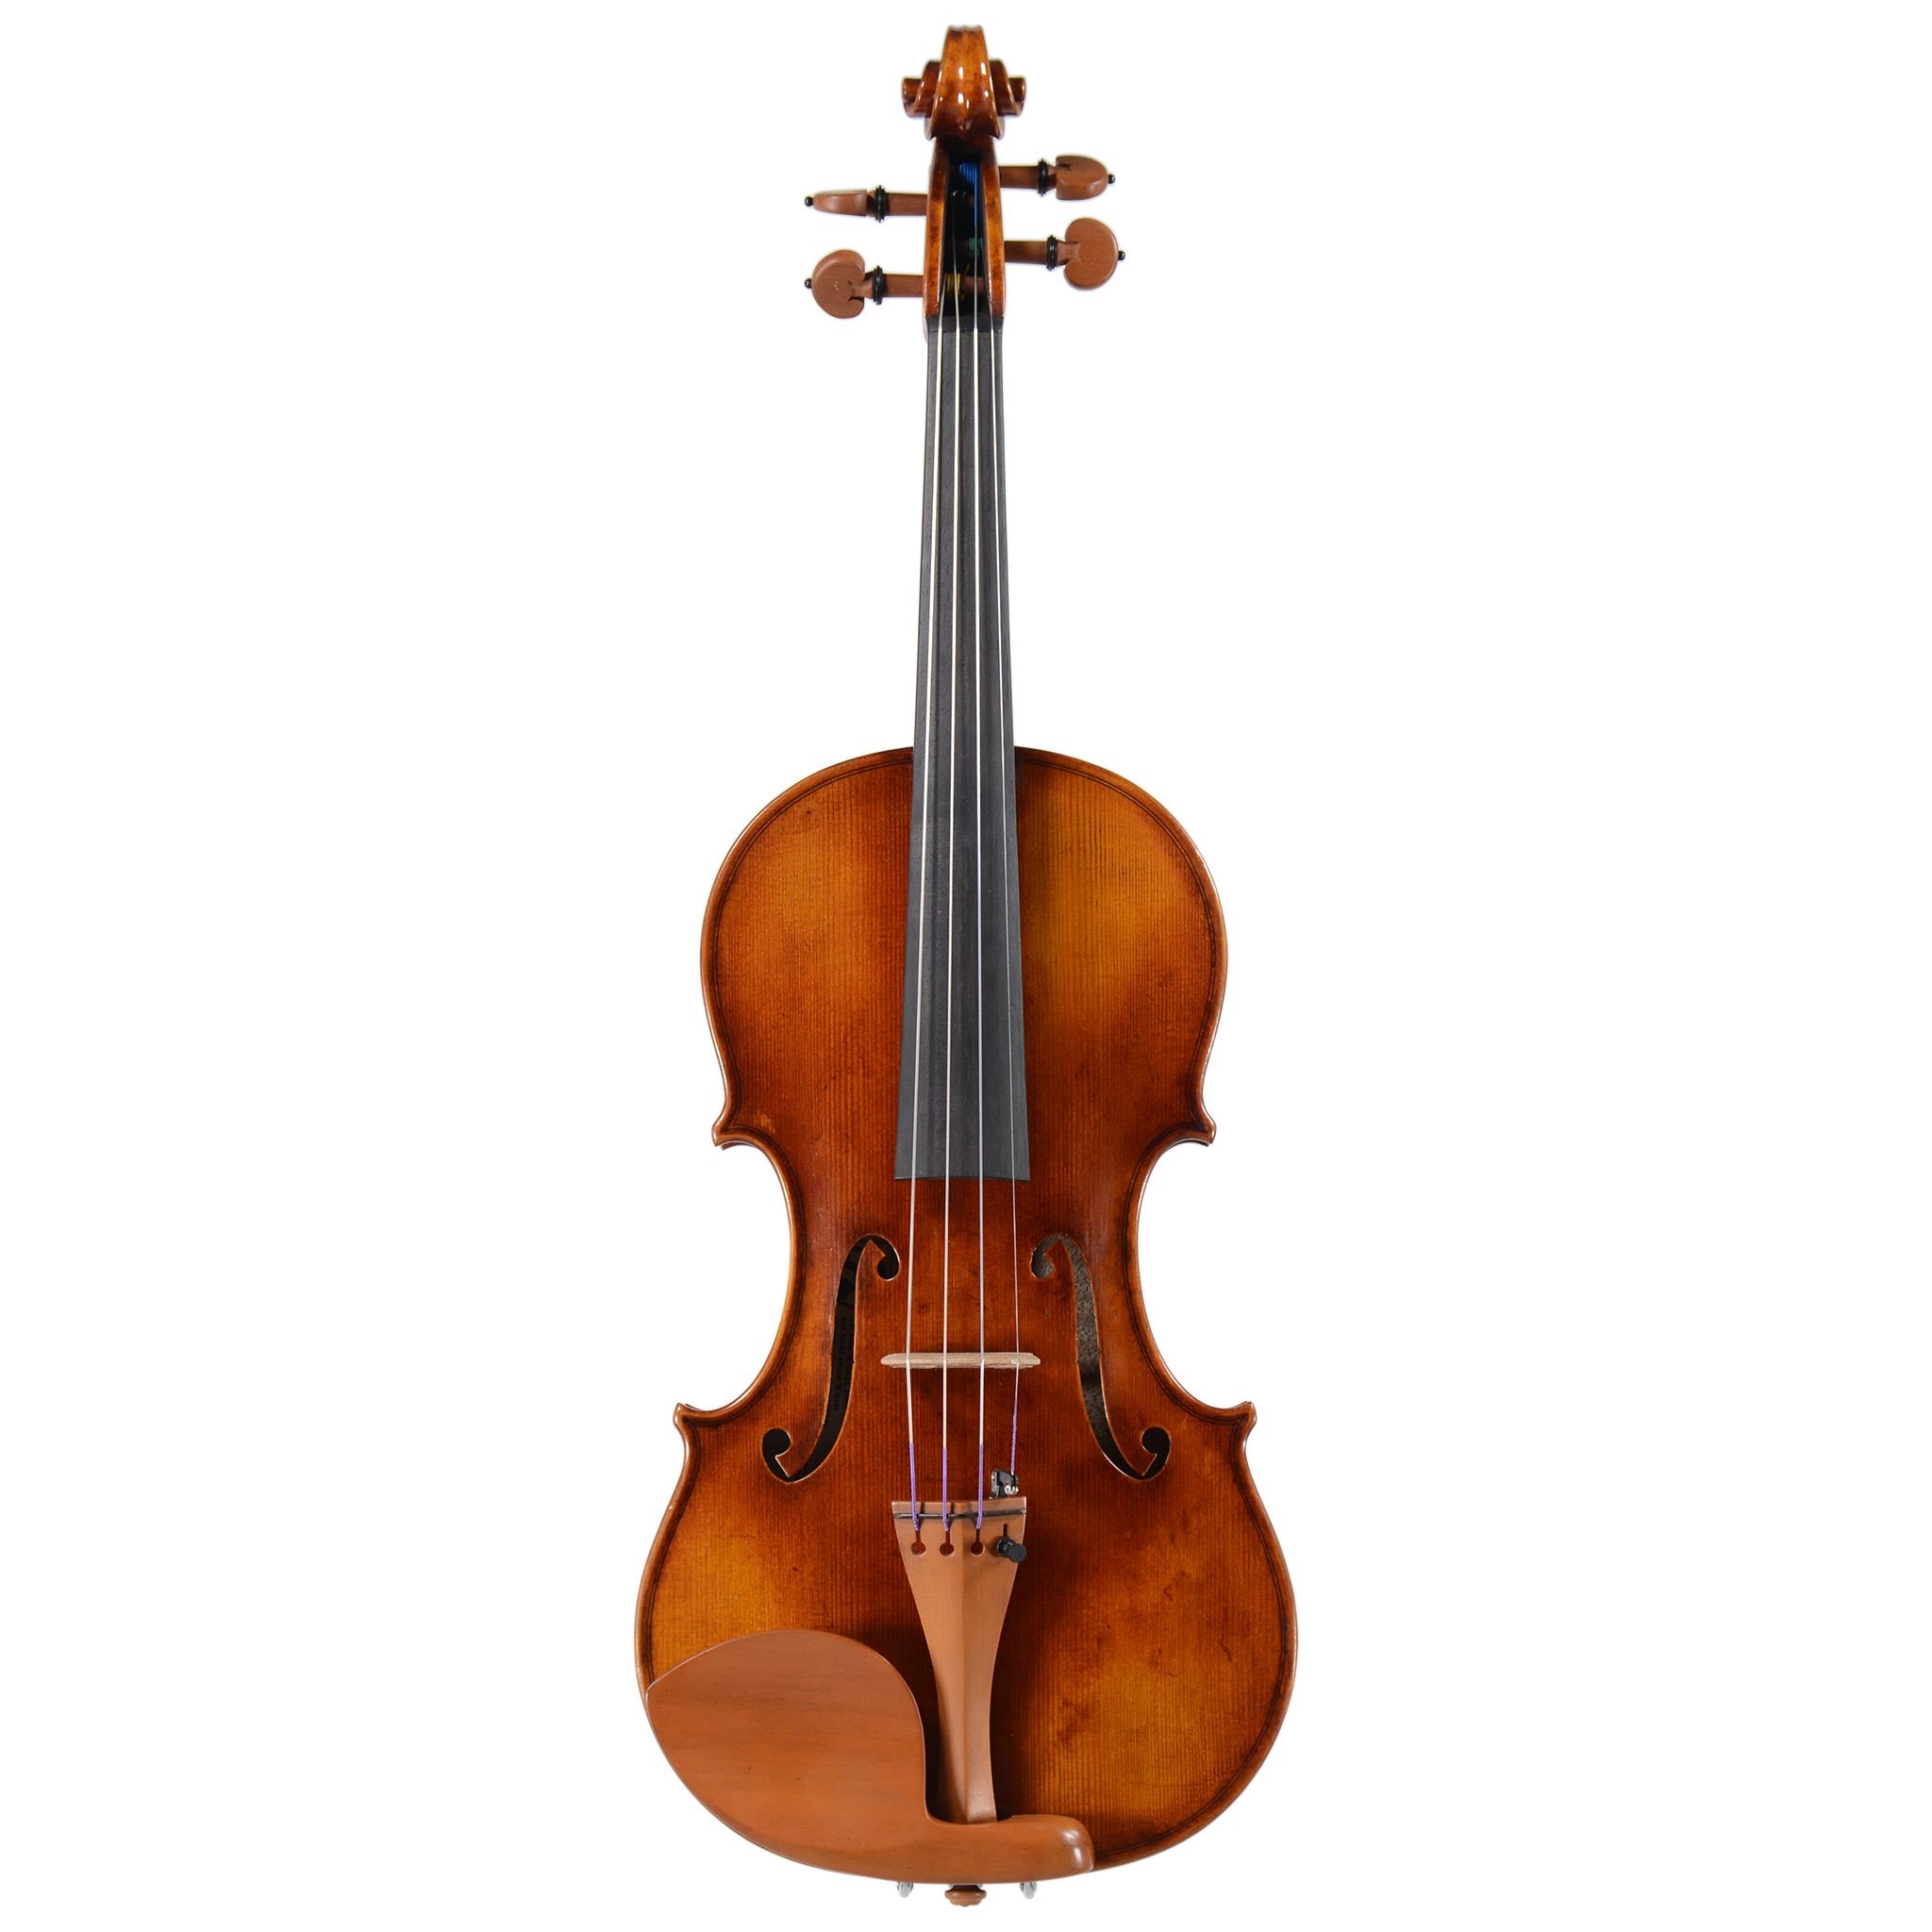 B-stock Ming Jiang Zhu 905 Violin (No. 283)